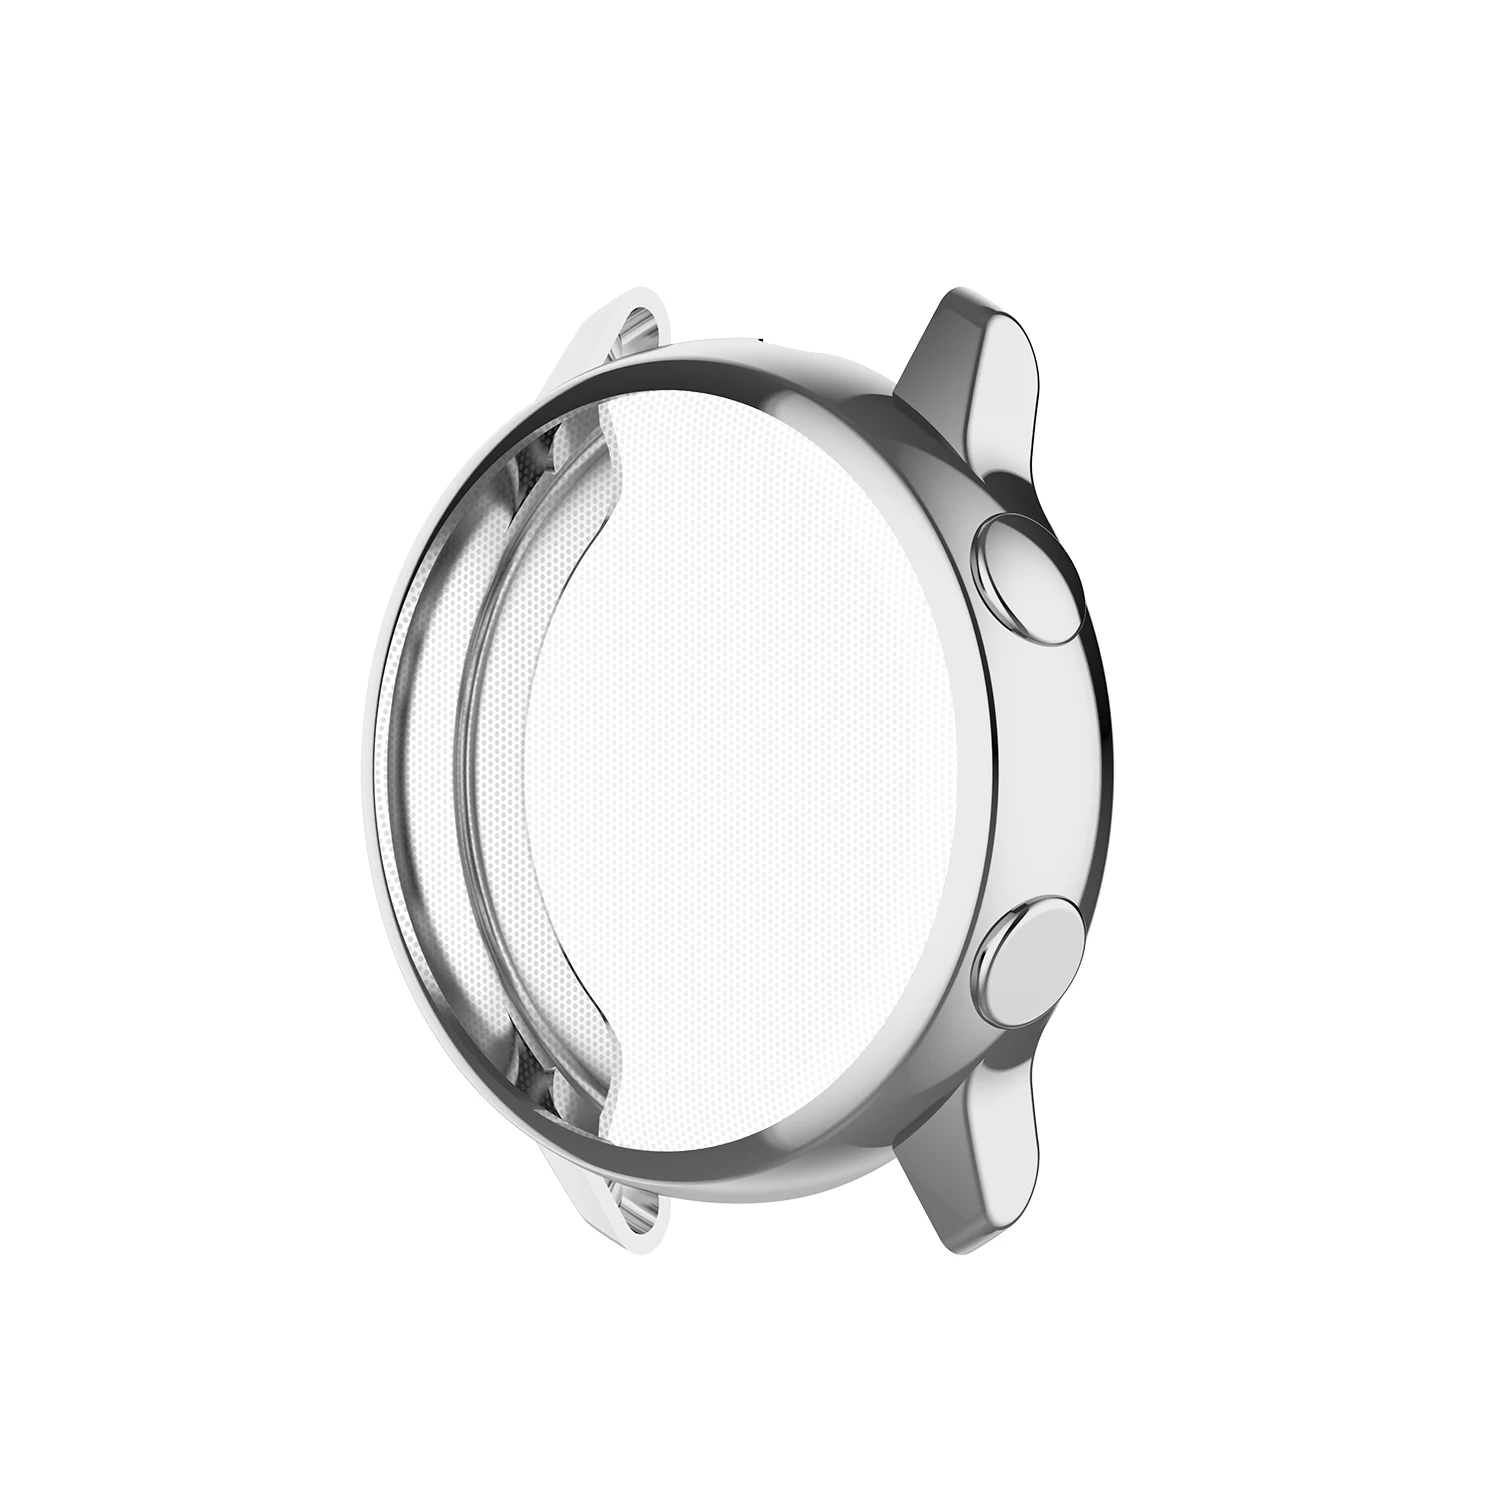 Мягкий защитный чехол для samsung Galaxy Watch Active SM-R500 тонкий TPU полная защита Корпус рамка аксессуары для бампера - Цвет: Серебристый